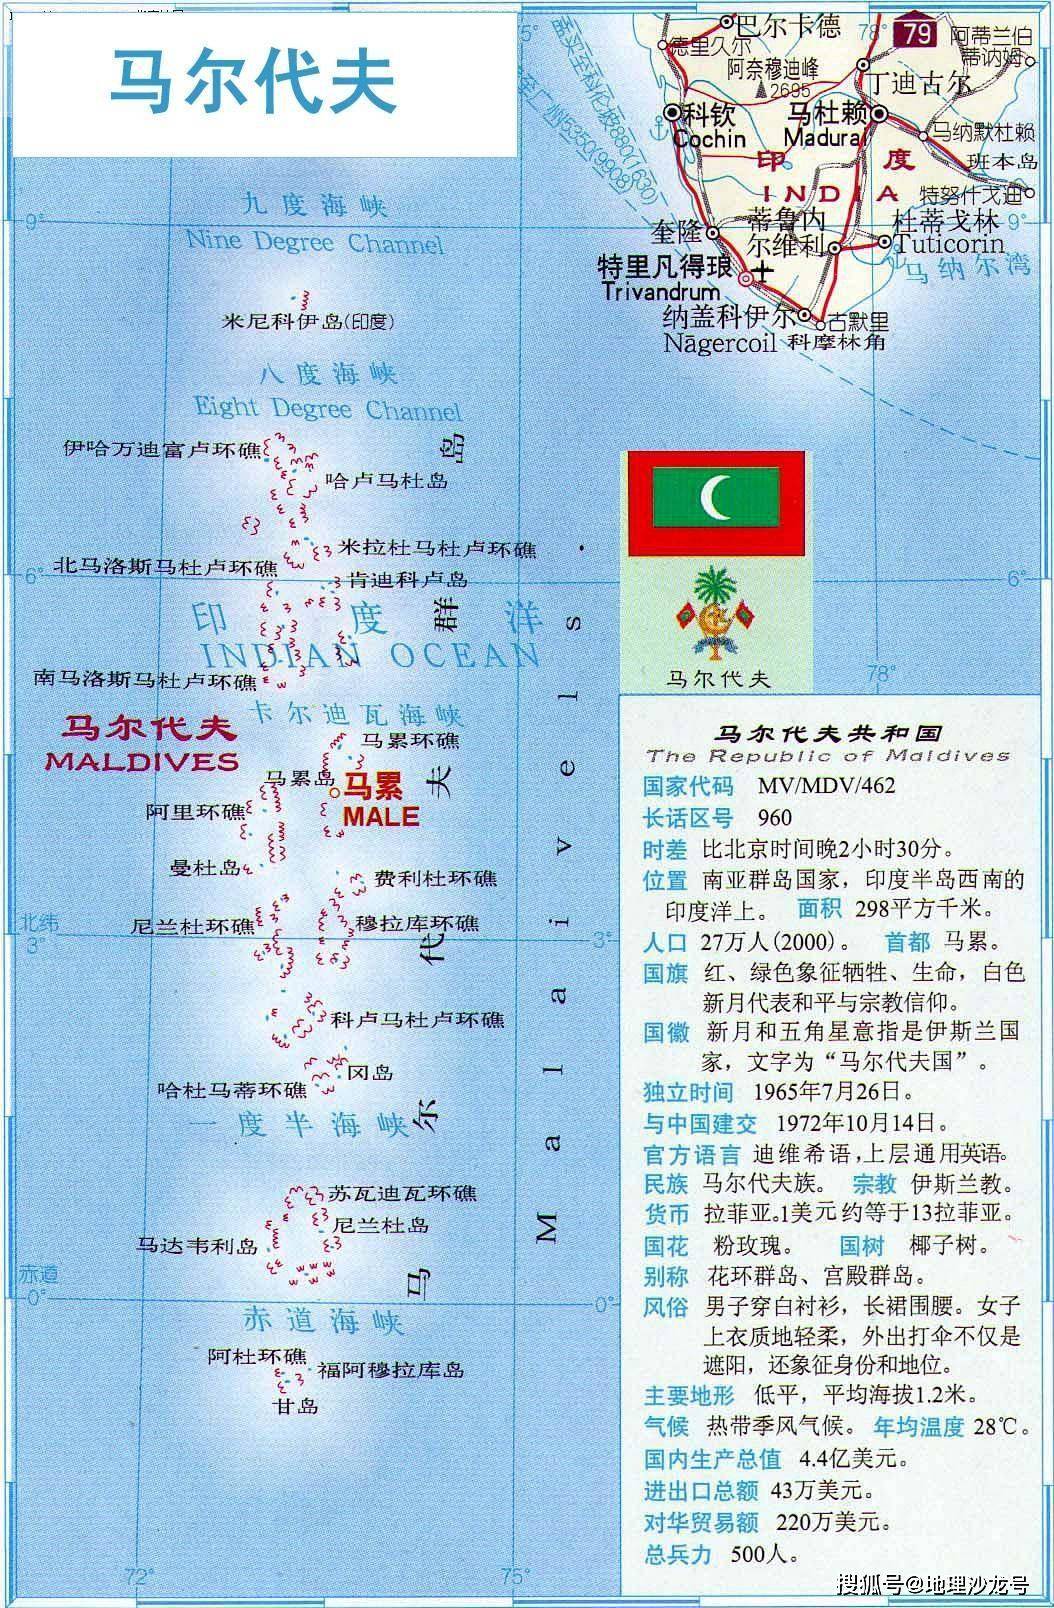 原创位于印度洋上的马尔代夫是一个怎样的国家